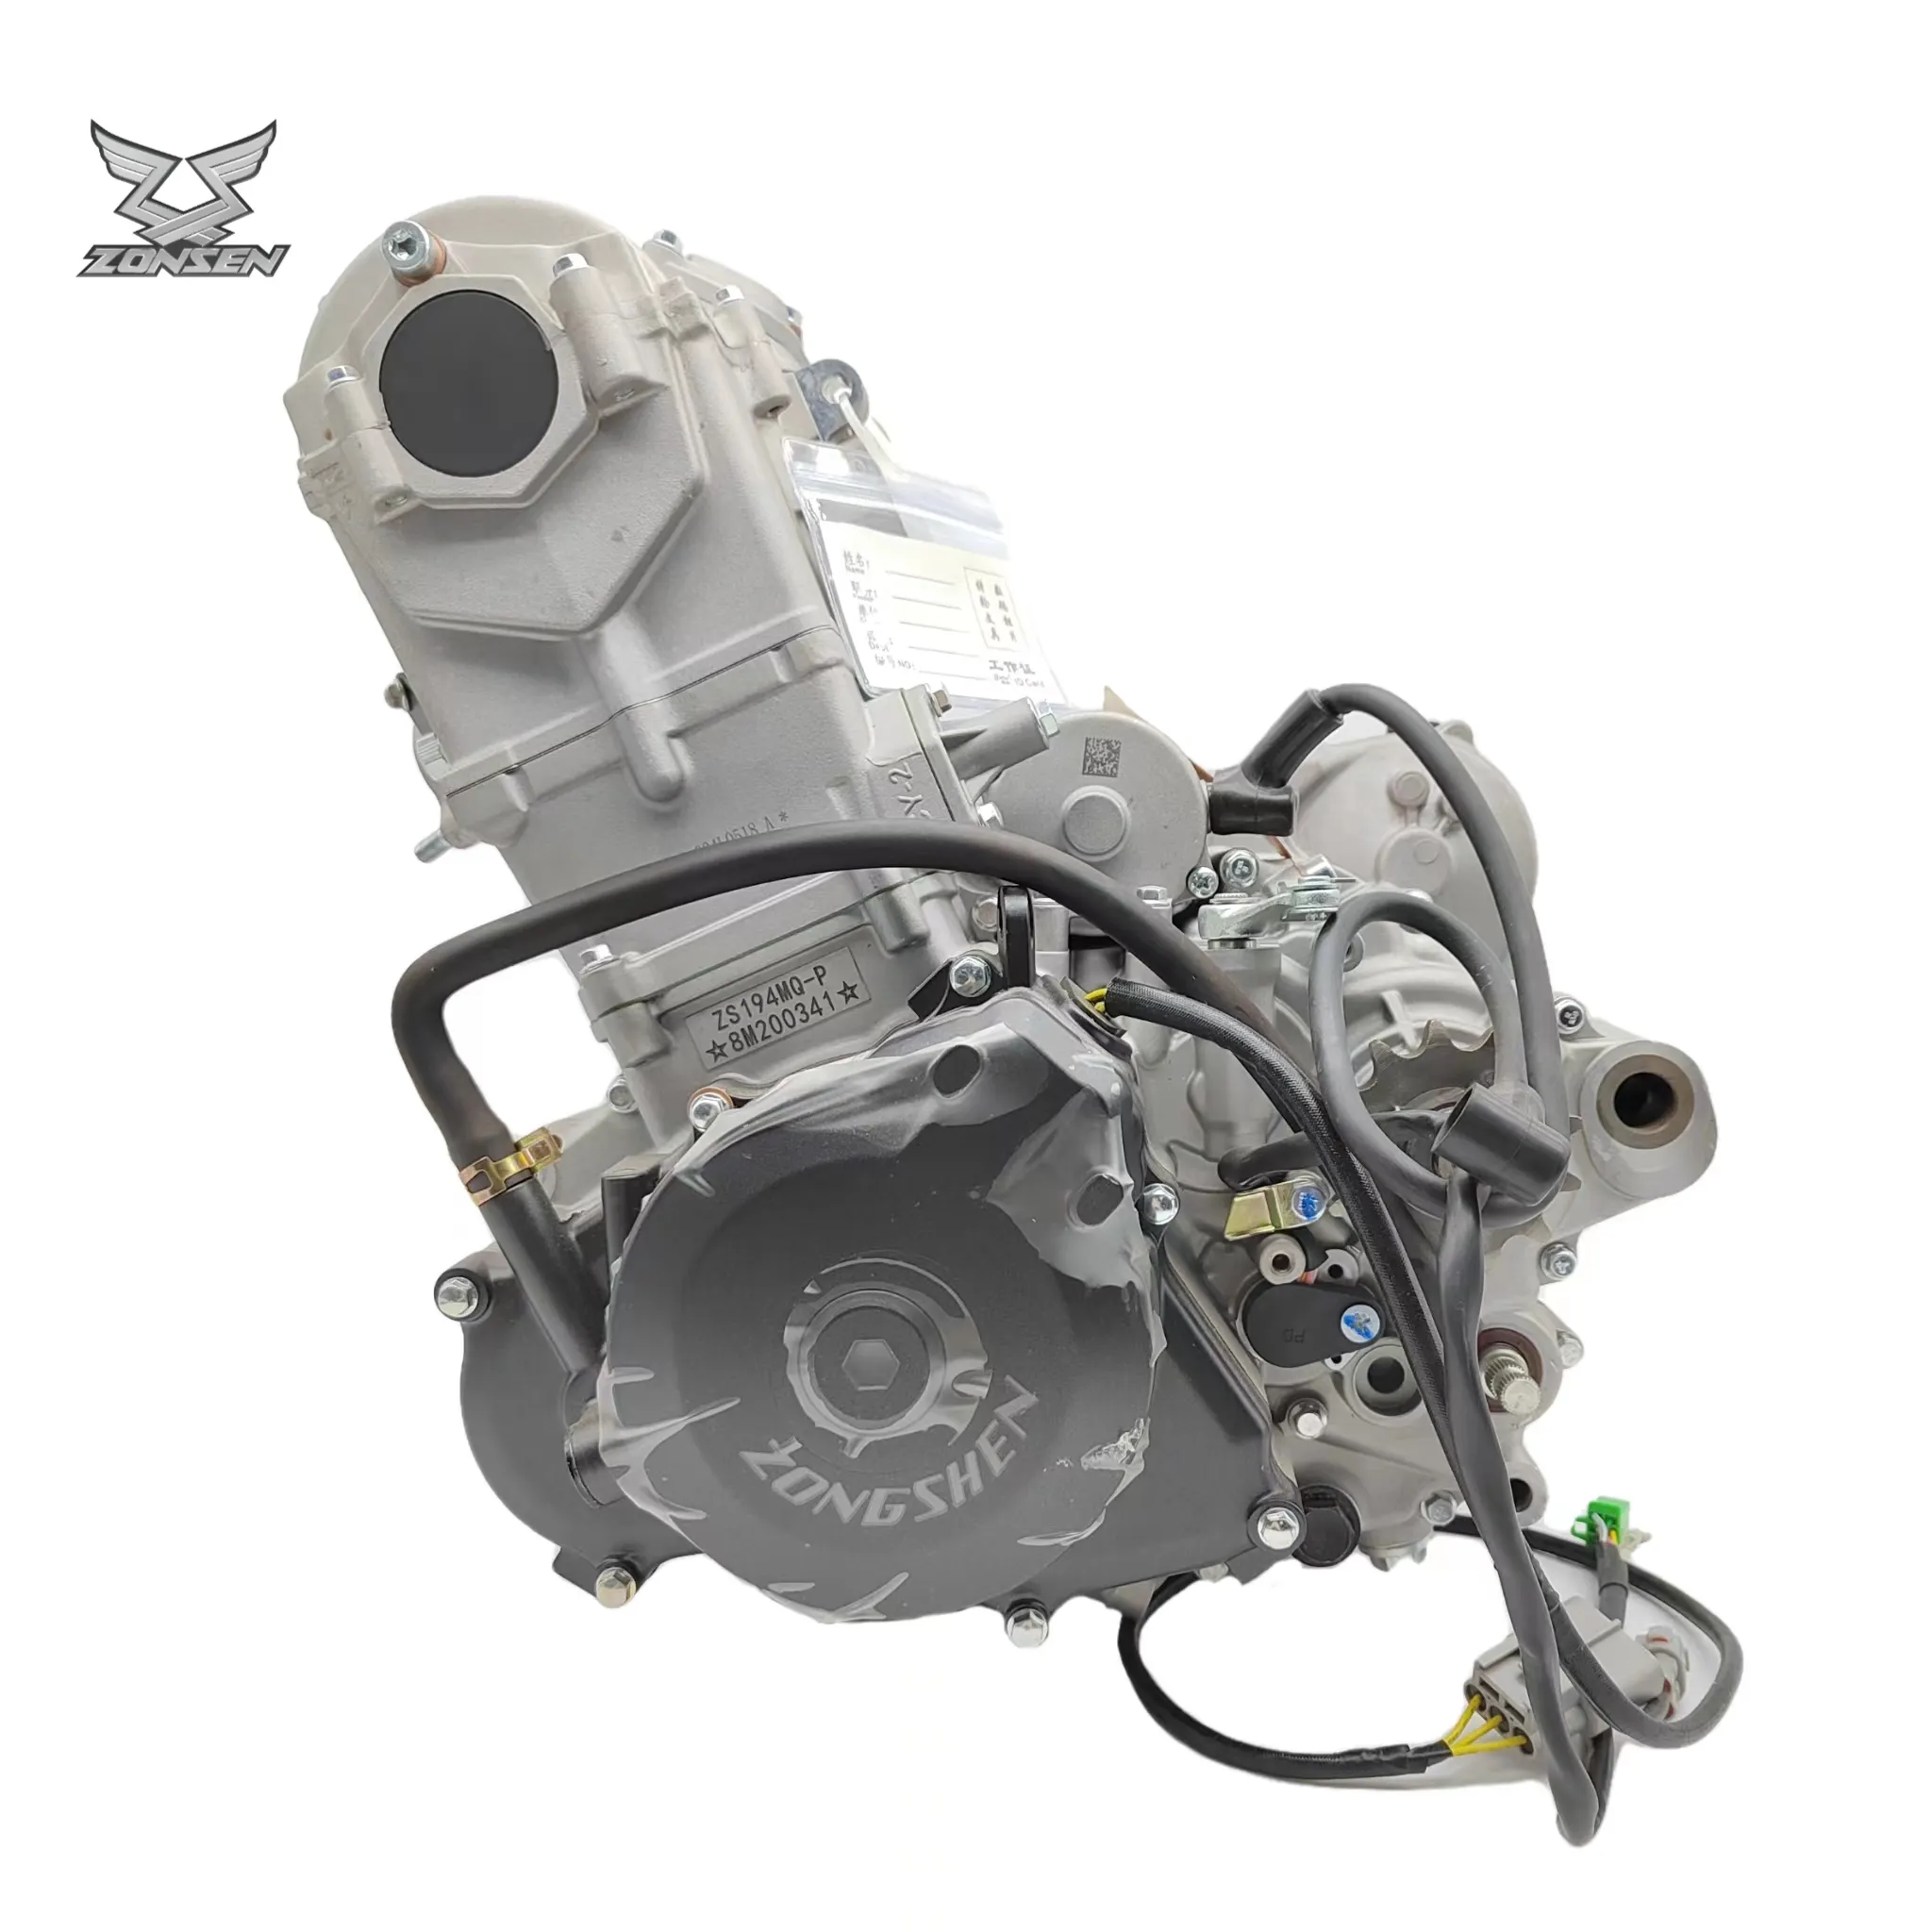 Vendita calda della fabbrica moto Zongshen NC EFI 450 motore raffreddato ad acqua motore Zongshen RX4 450cc per assemblaggio motore ciclone RX4